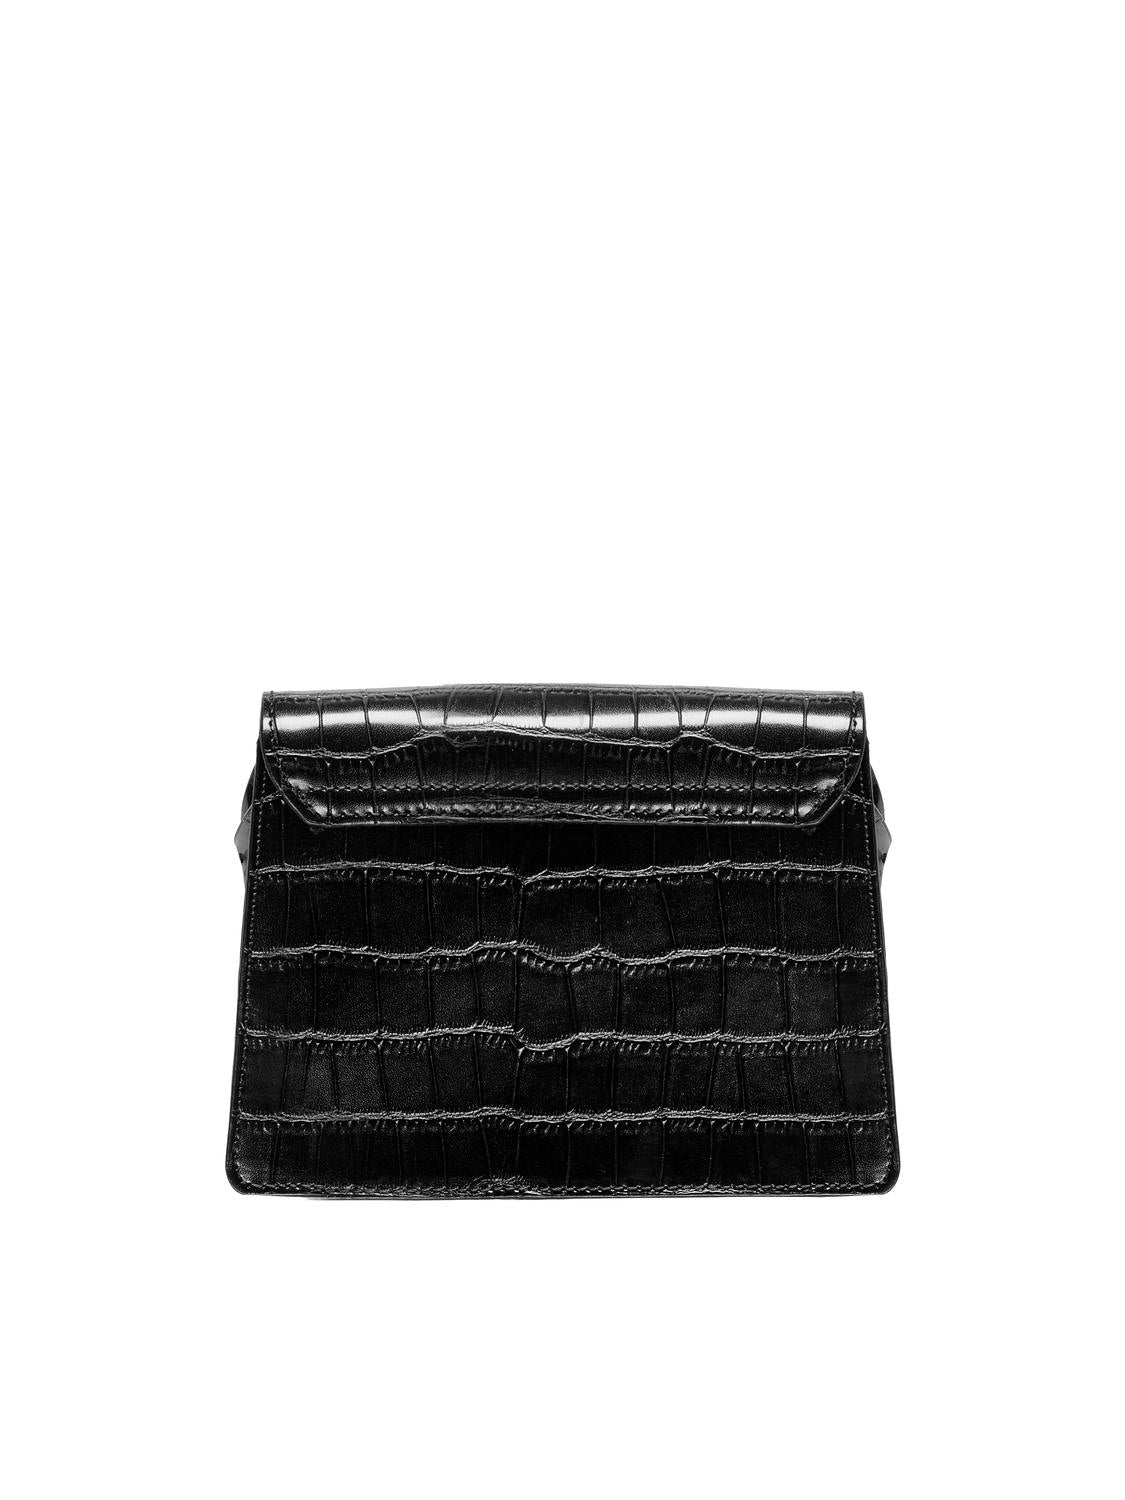 ONLPENNY Handbag - Black